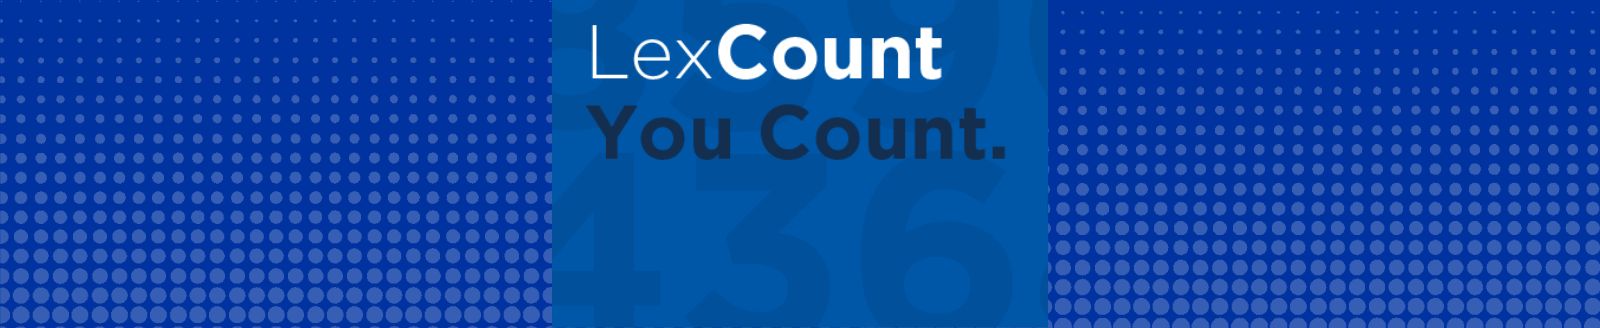 LexCount